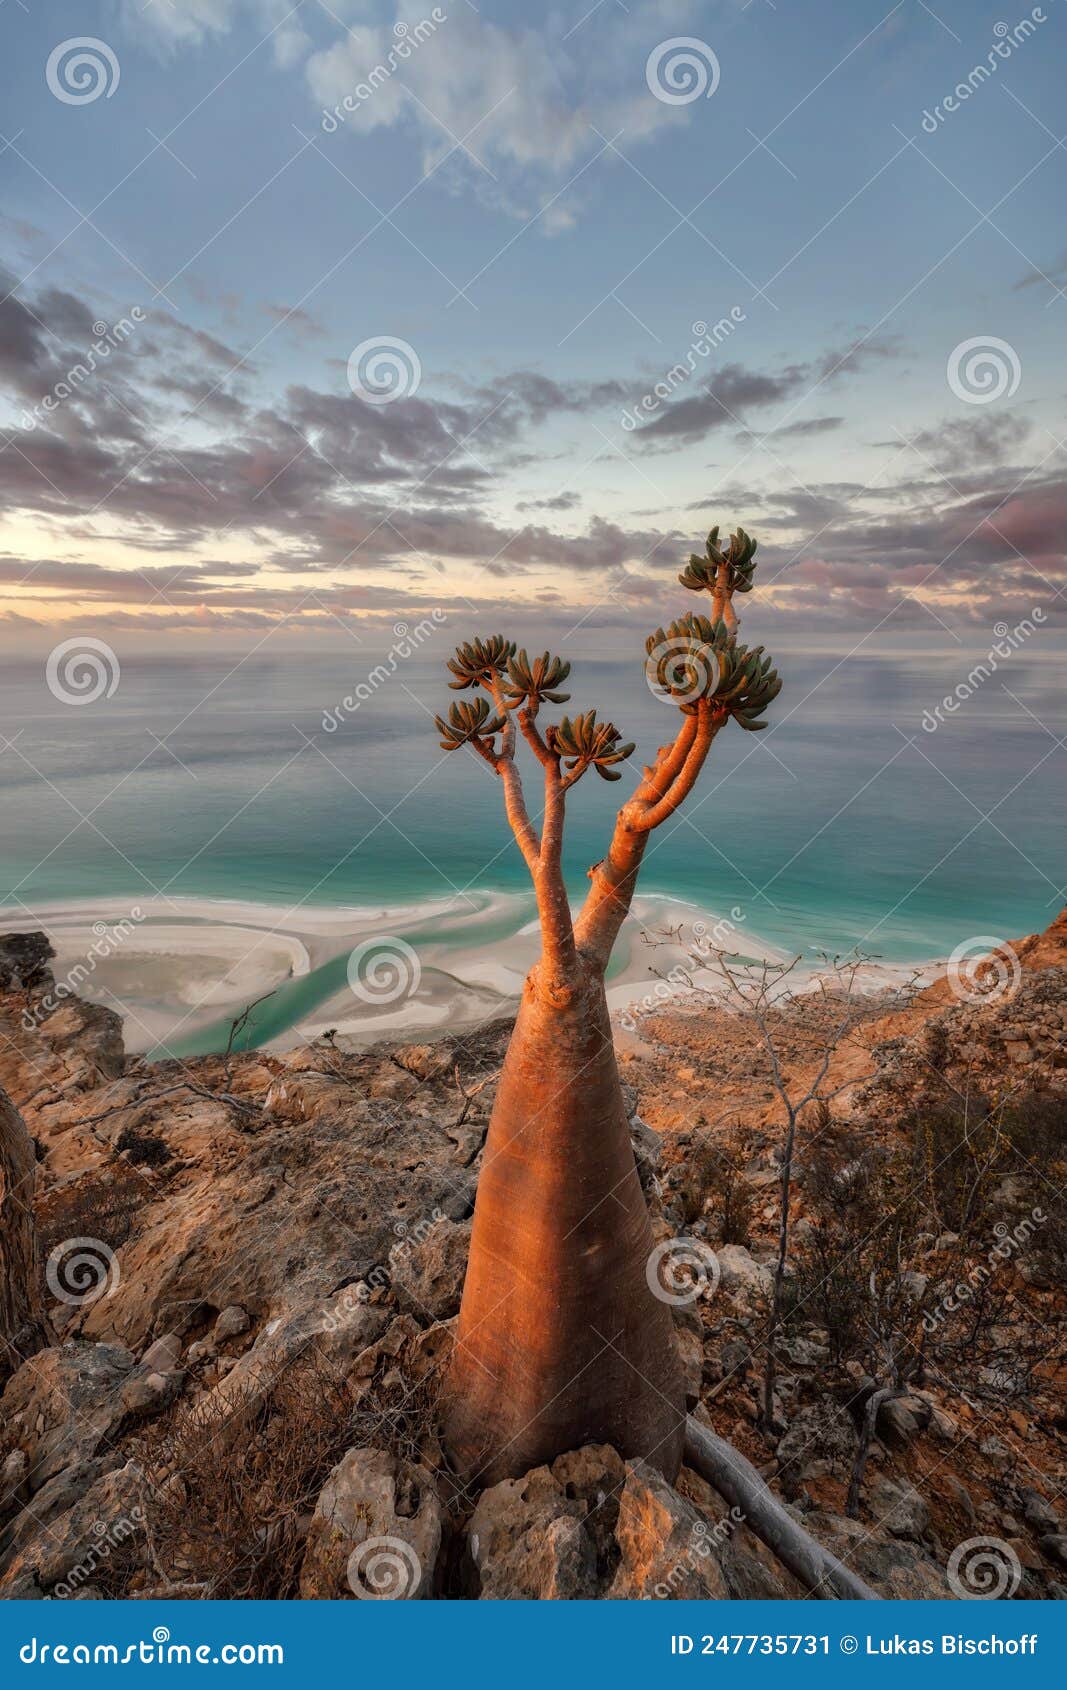 bottle tree on a mountain site in socotra, yemen, taken in novem